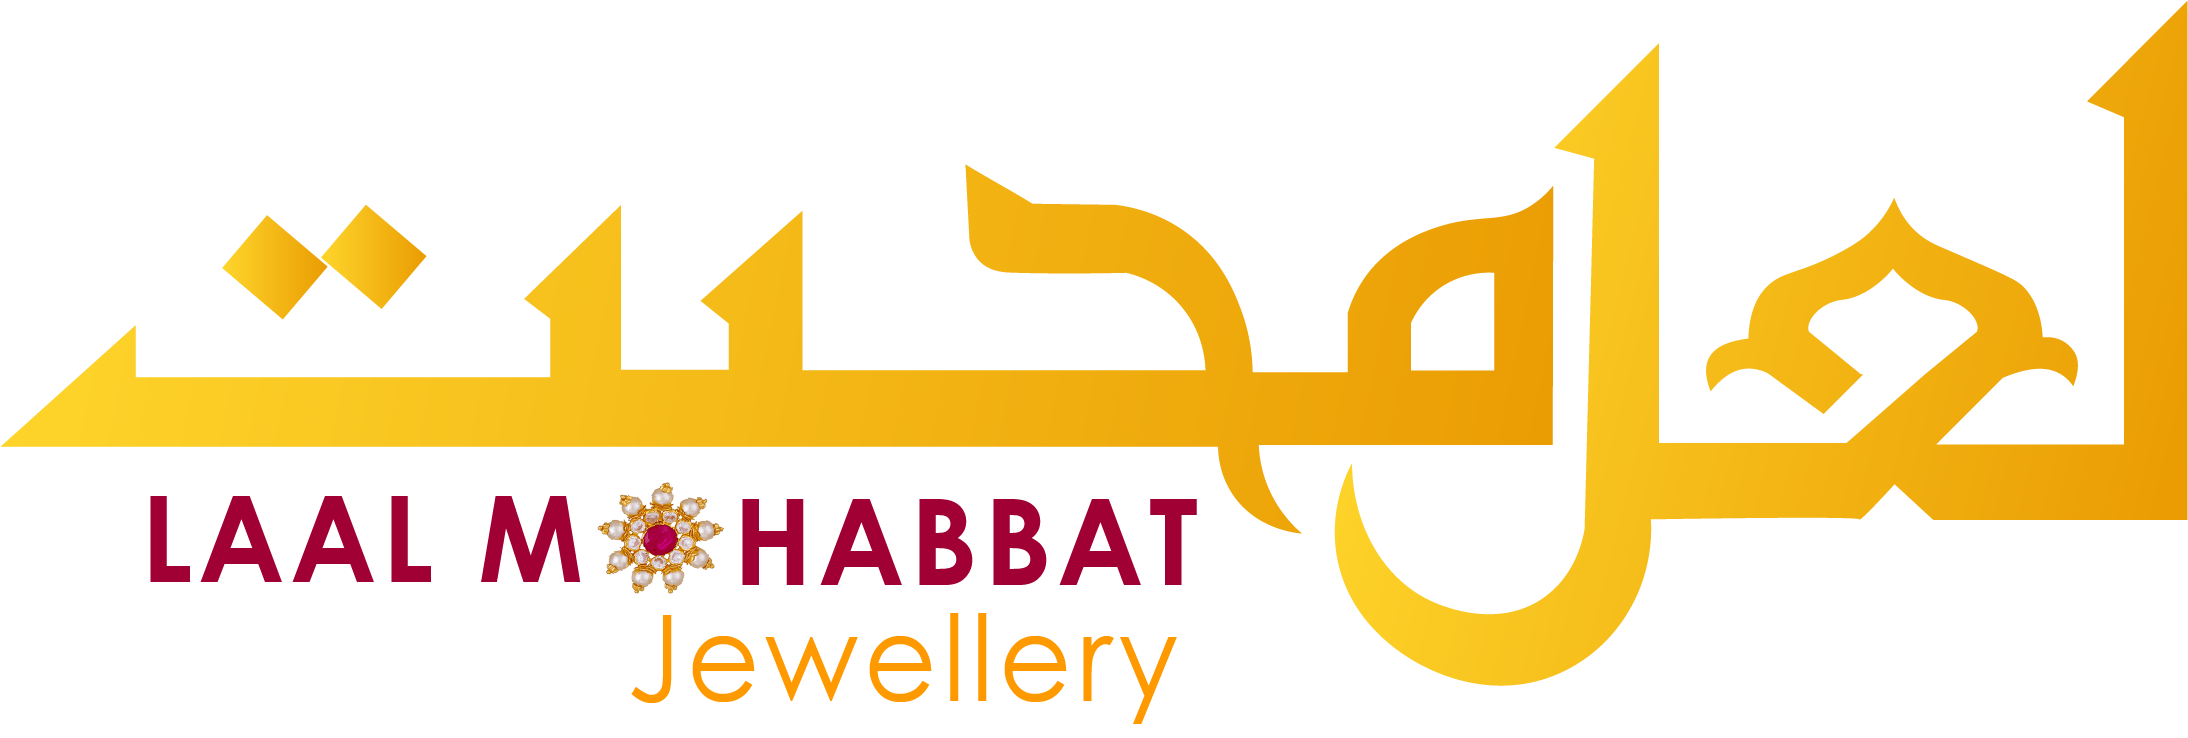 Laal Mohabbat Jewellery